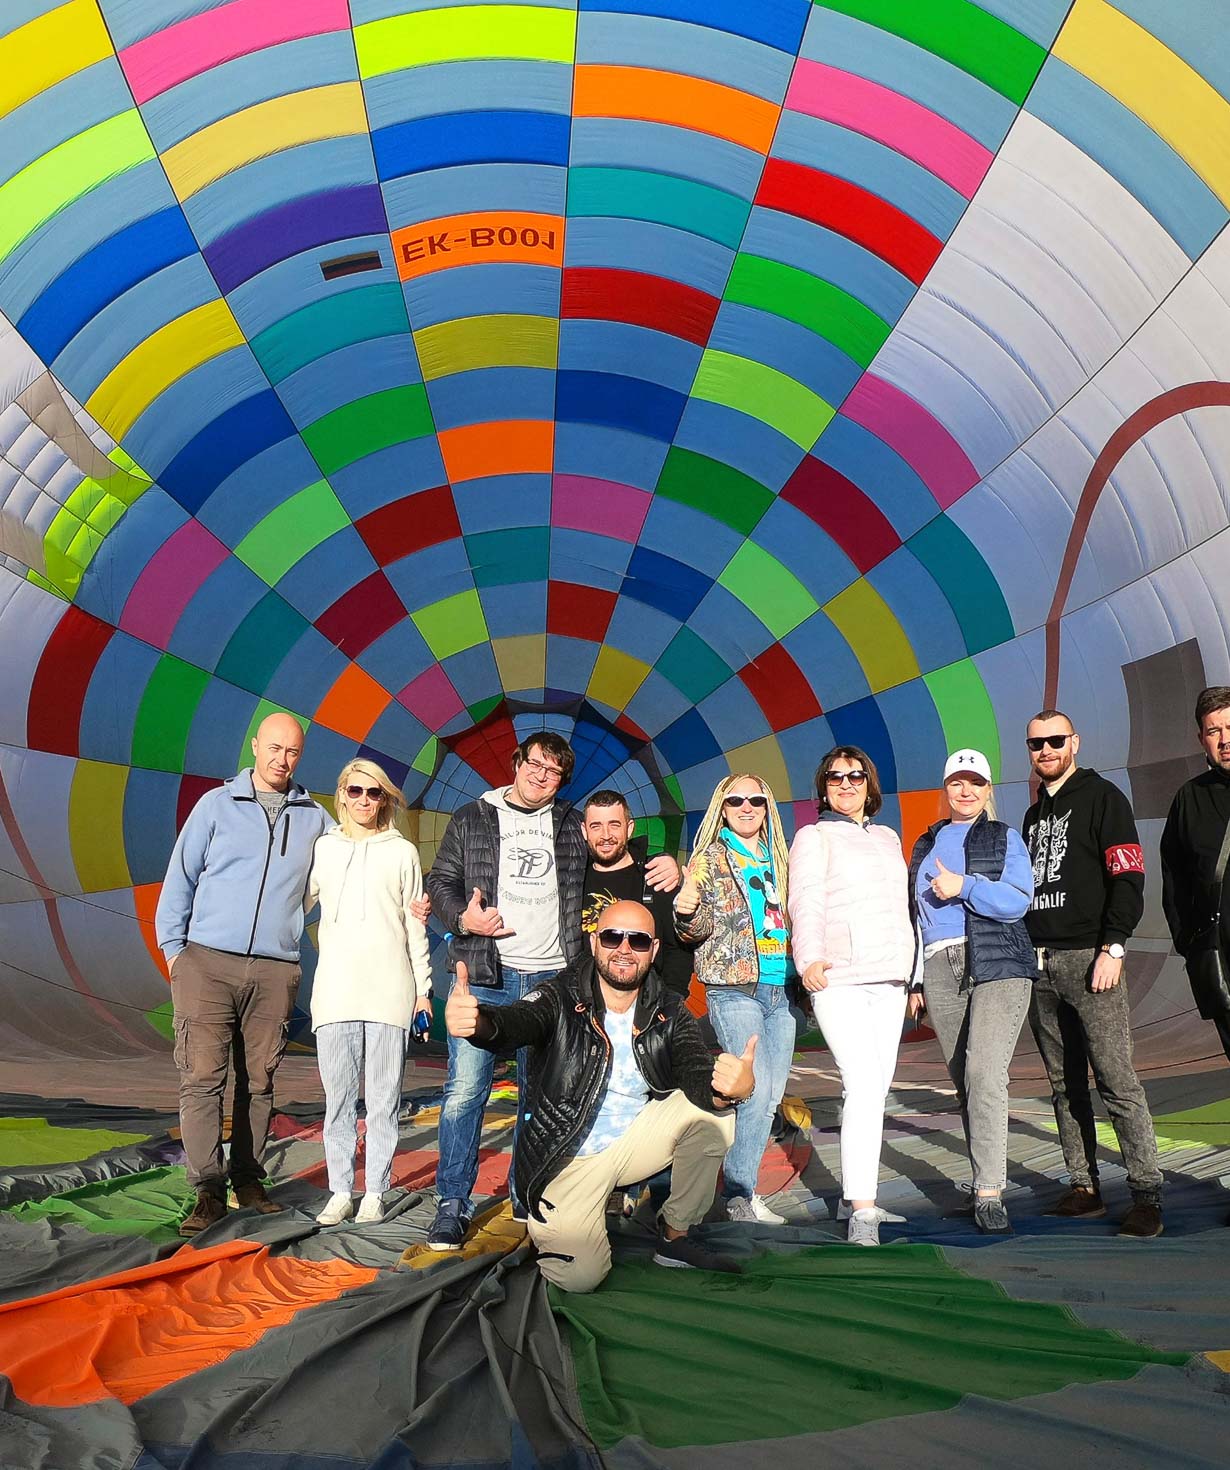 Balloon ride tour ''Skyball'' group